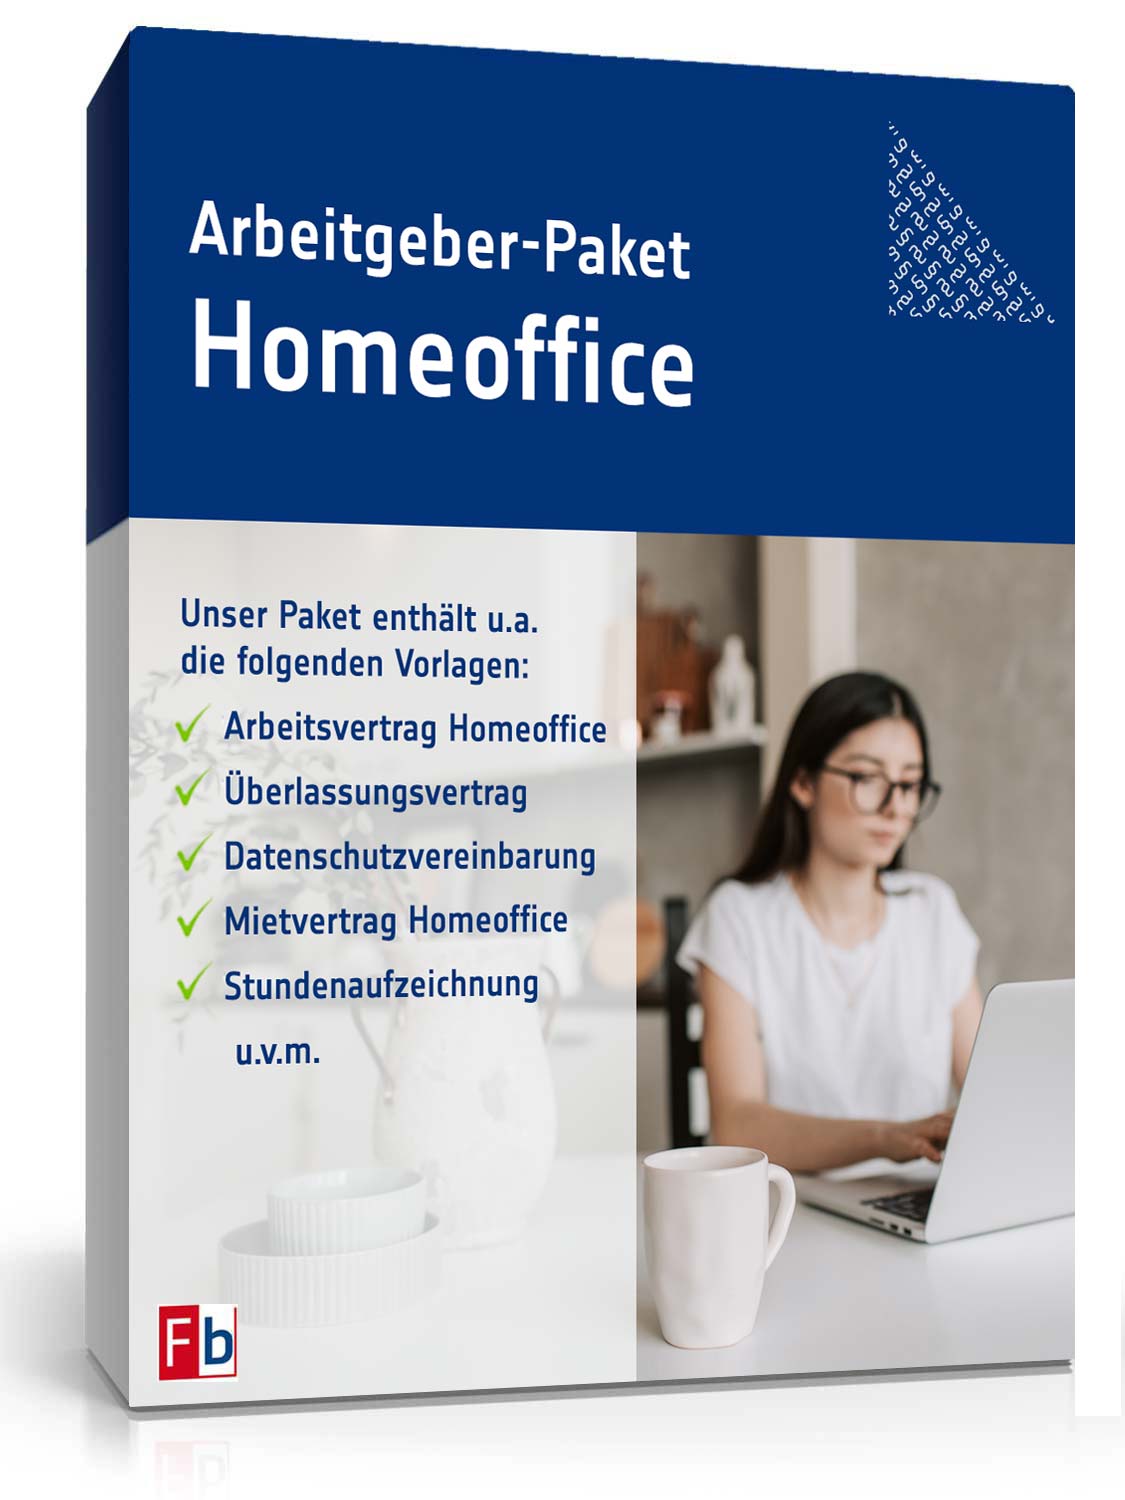 Hauptbild des Produkts: Arbeitgeber-Paket Homeoffice